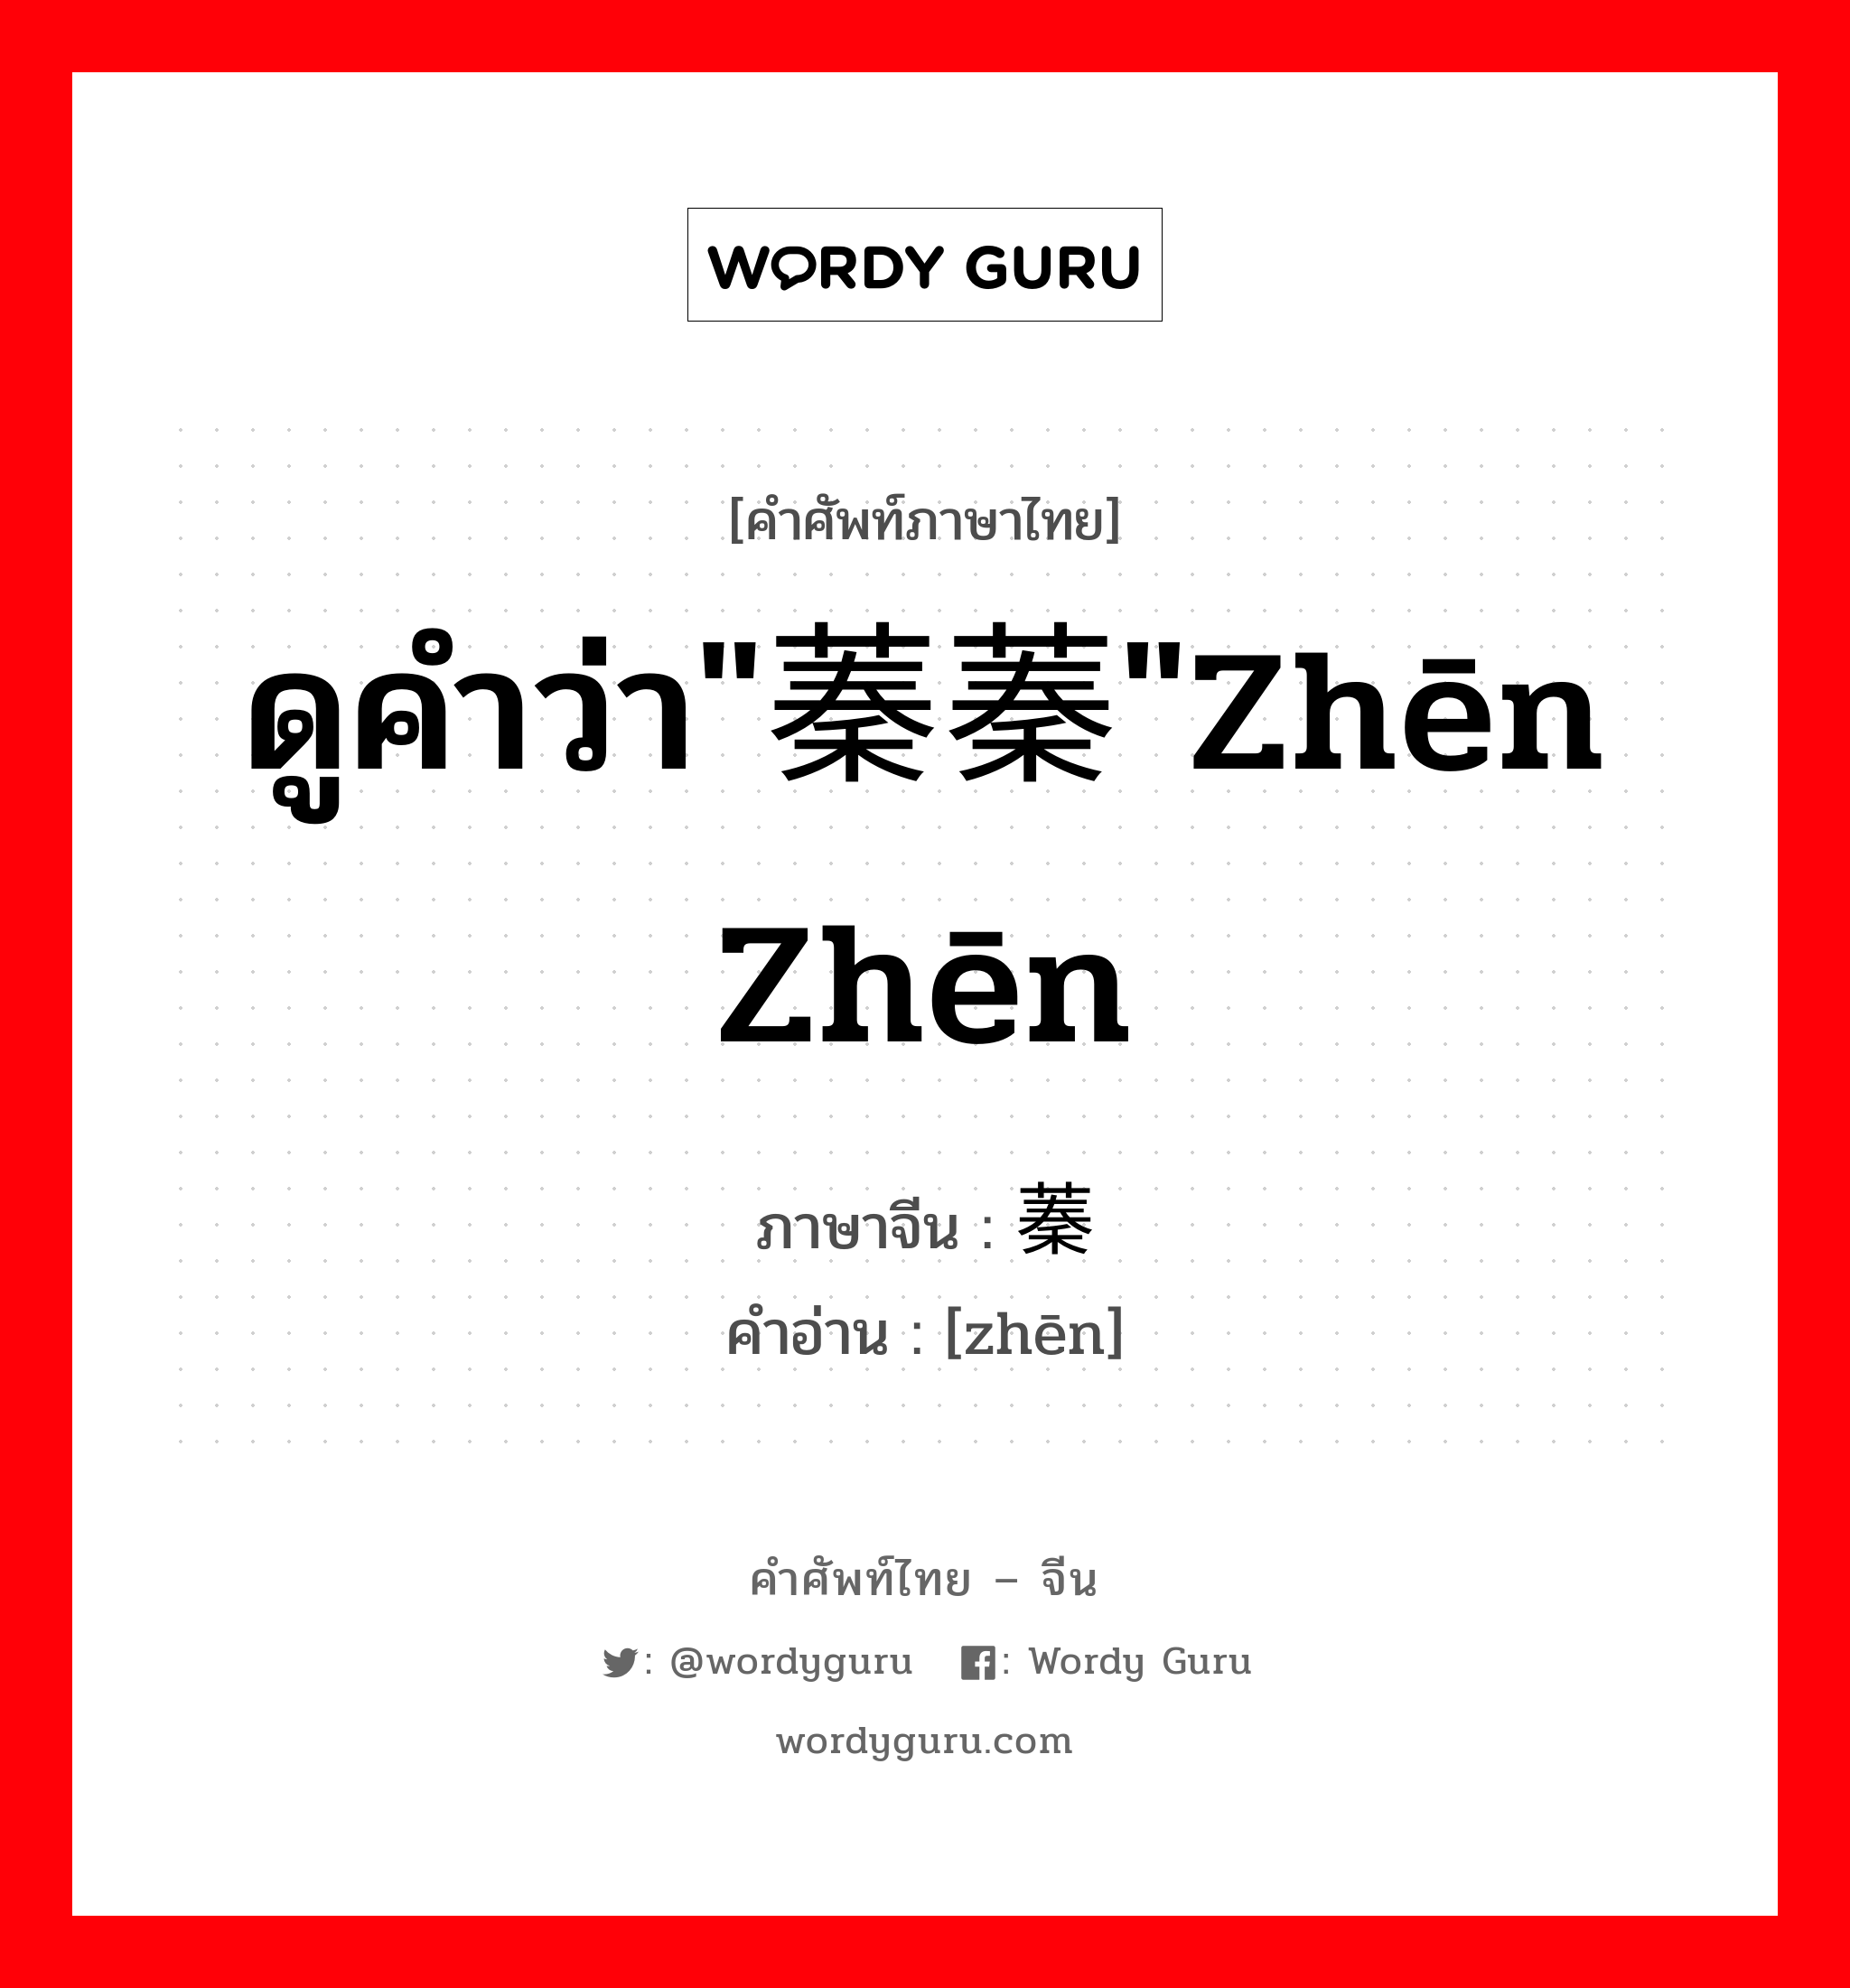 ดูคำว่า"蓁蓁"zhēn zhēn ภาษาจีนคืออะไร, คำศัพท์ภาษาไทย - จีน ดูคำว่า"蓁蓁"zhēn zhēn ภาษาจีน 蓁 คำอ่าน [zhēn]